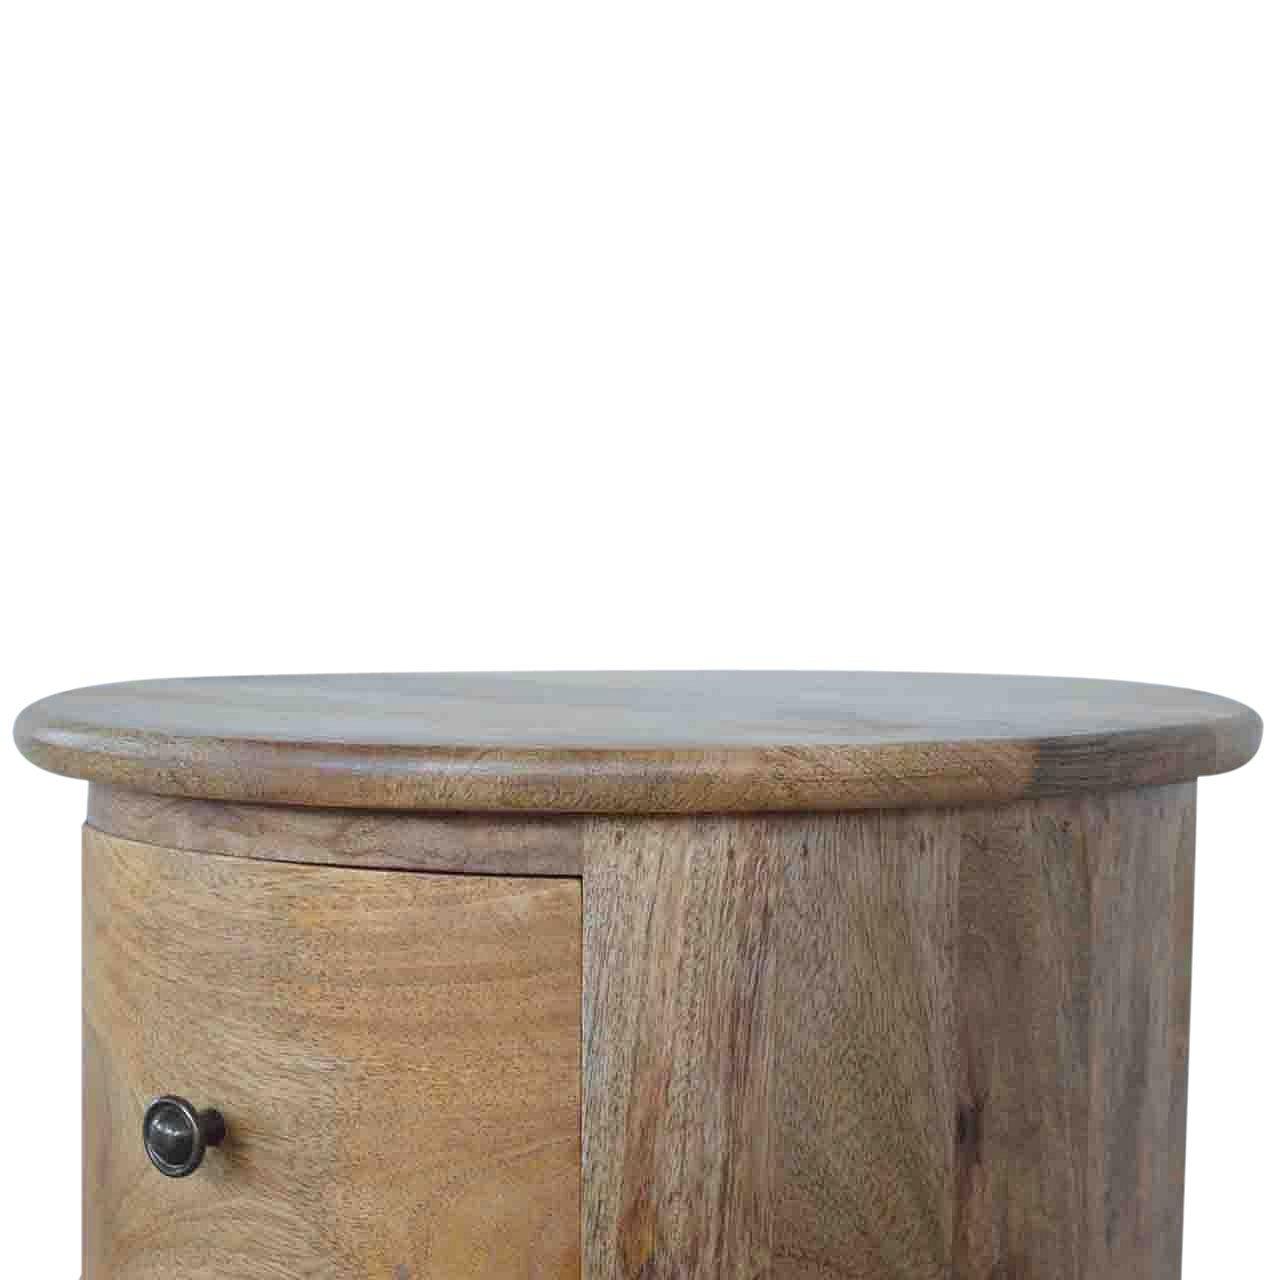 3 drawer drum chest - crimblefest furniture - image 10